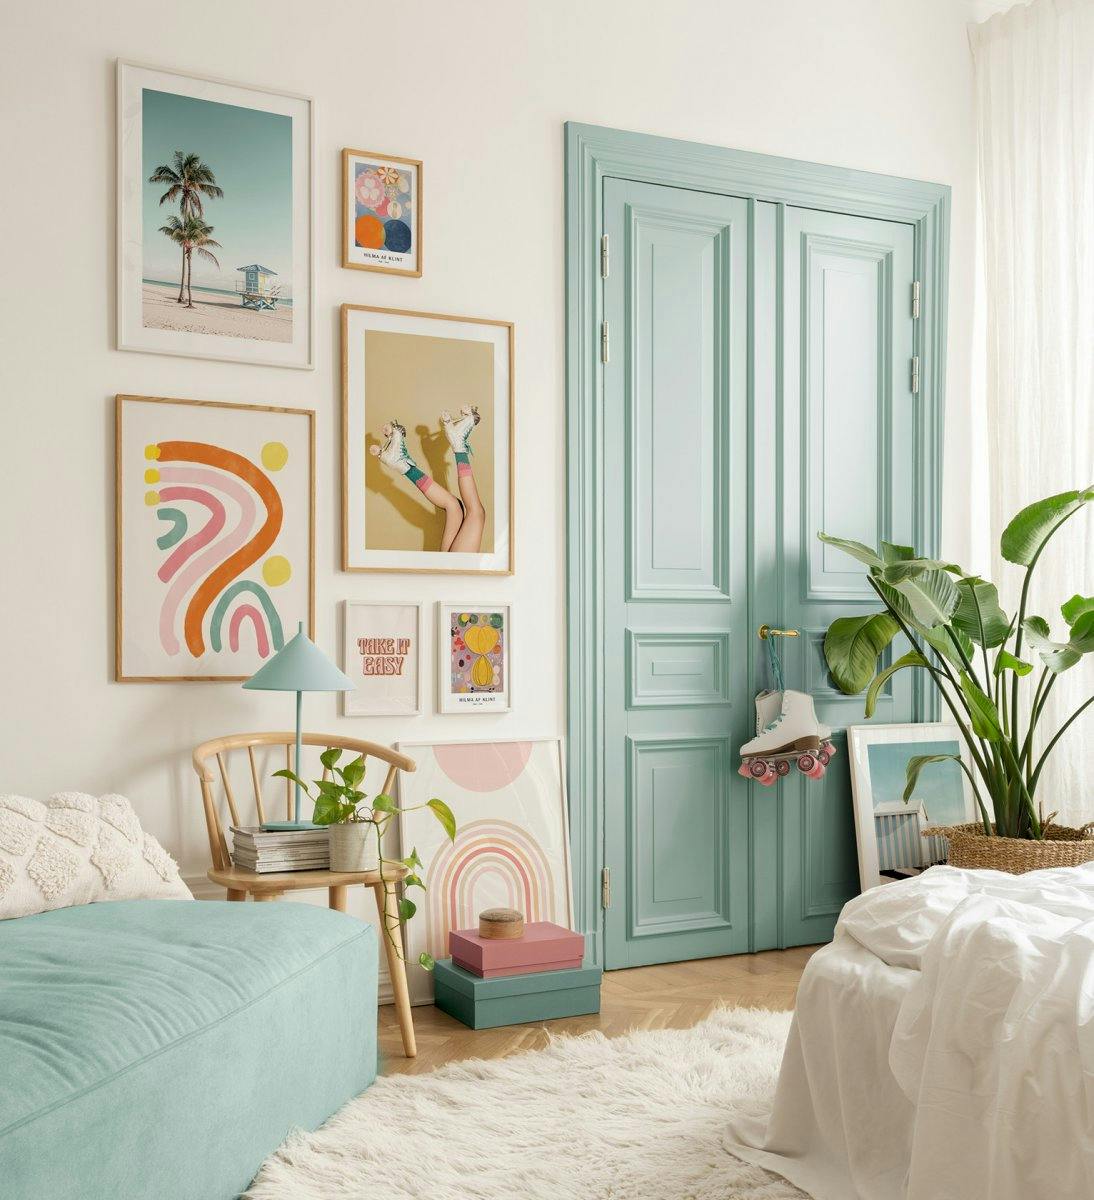 レトロな雰囲気の寝室やリビングルームに、遊び心のある色使いの写真や名言プリントを。